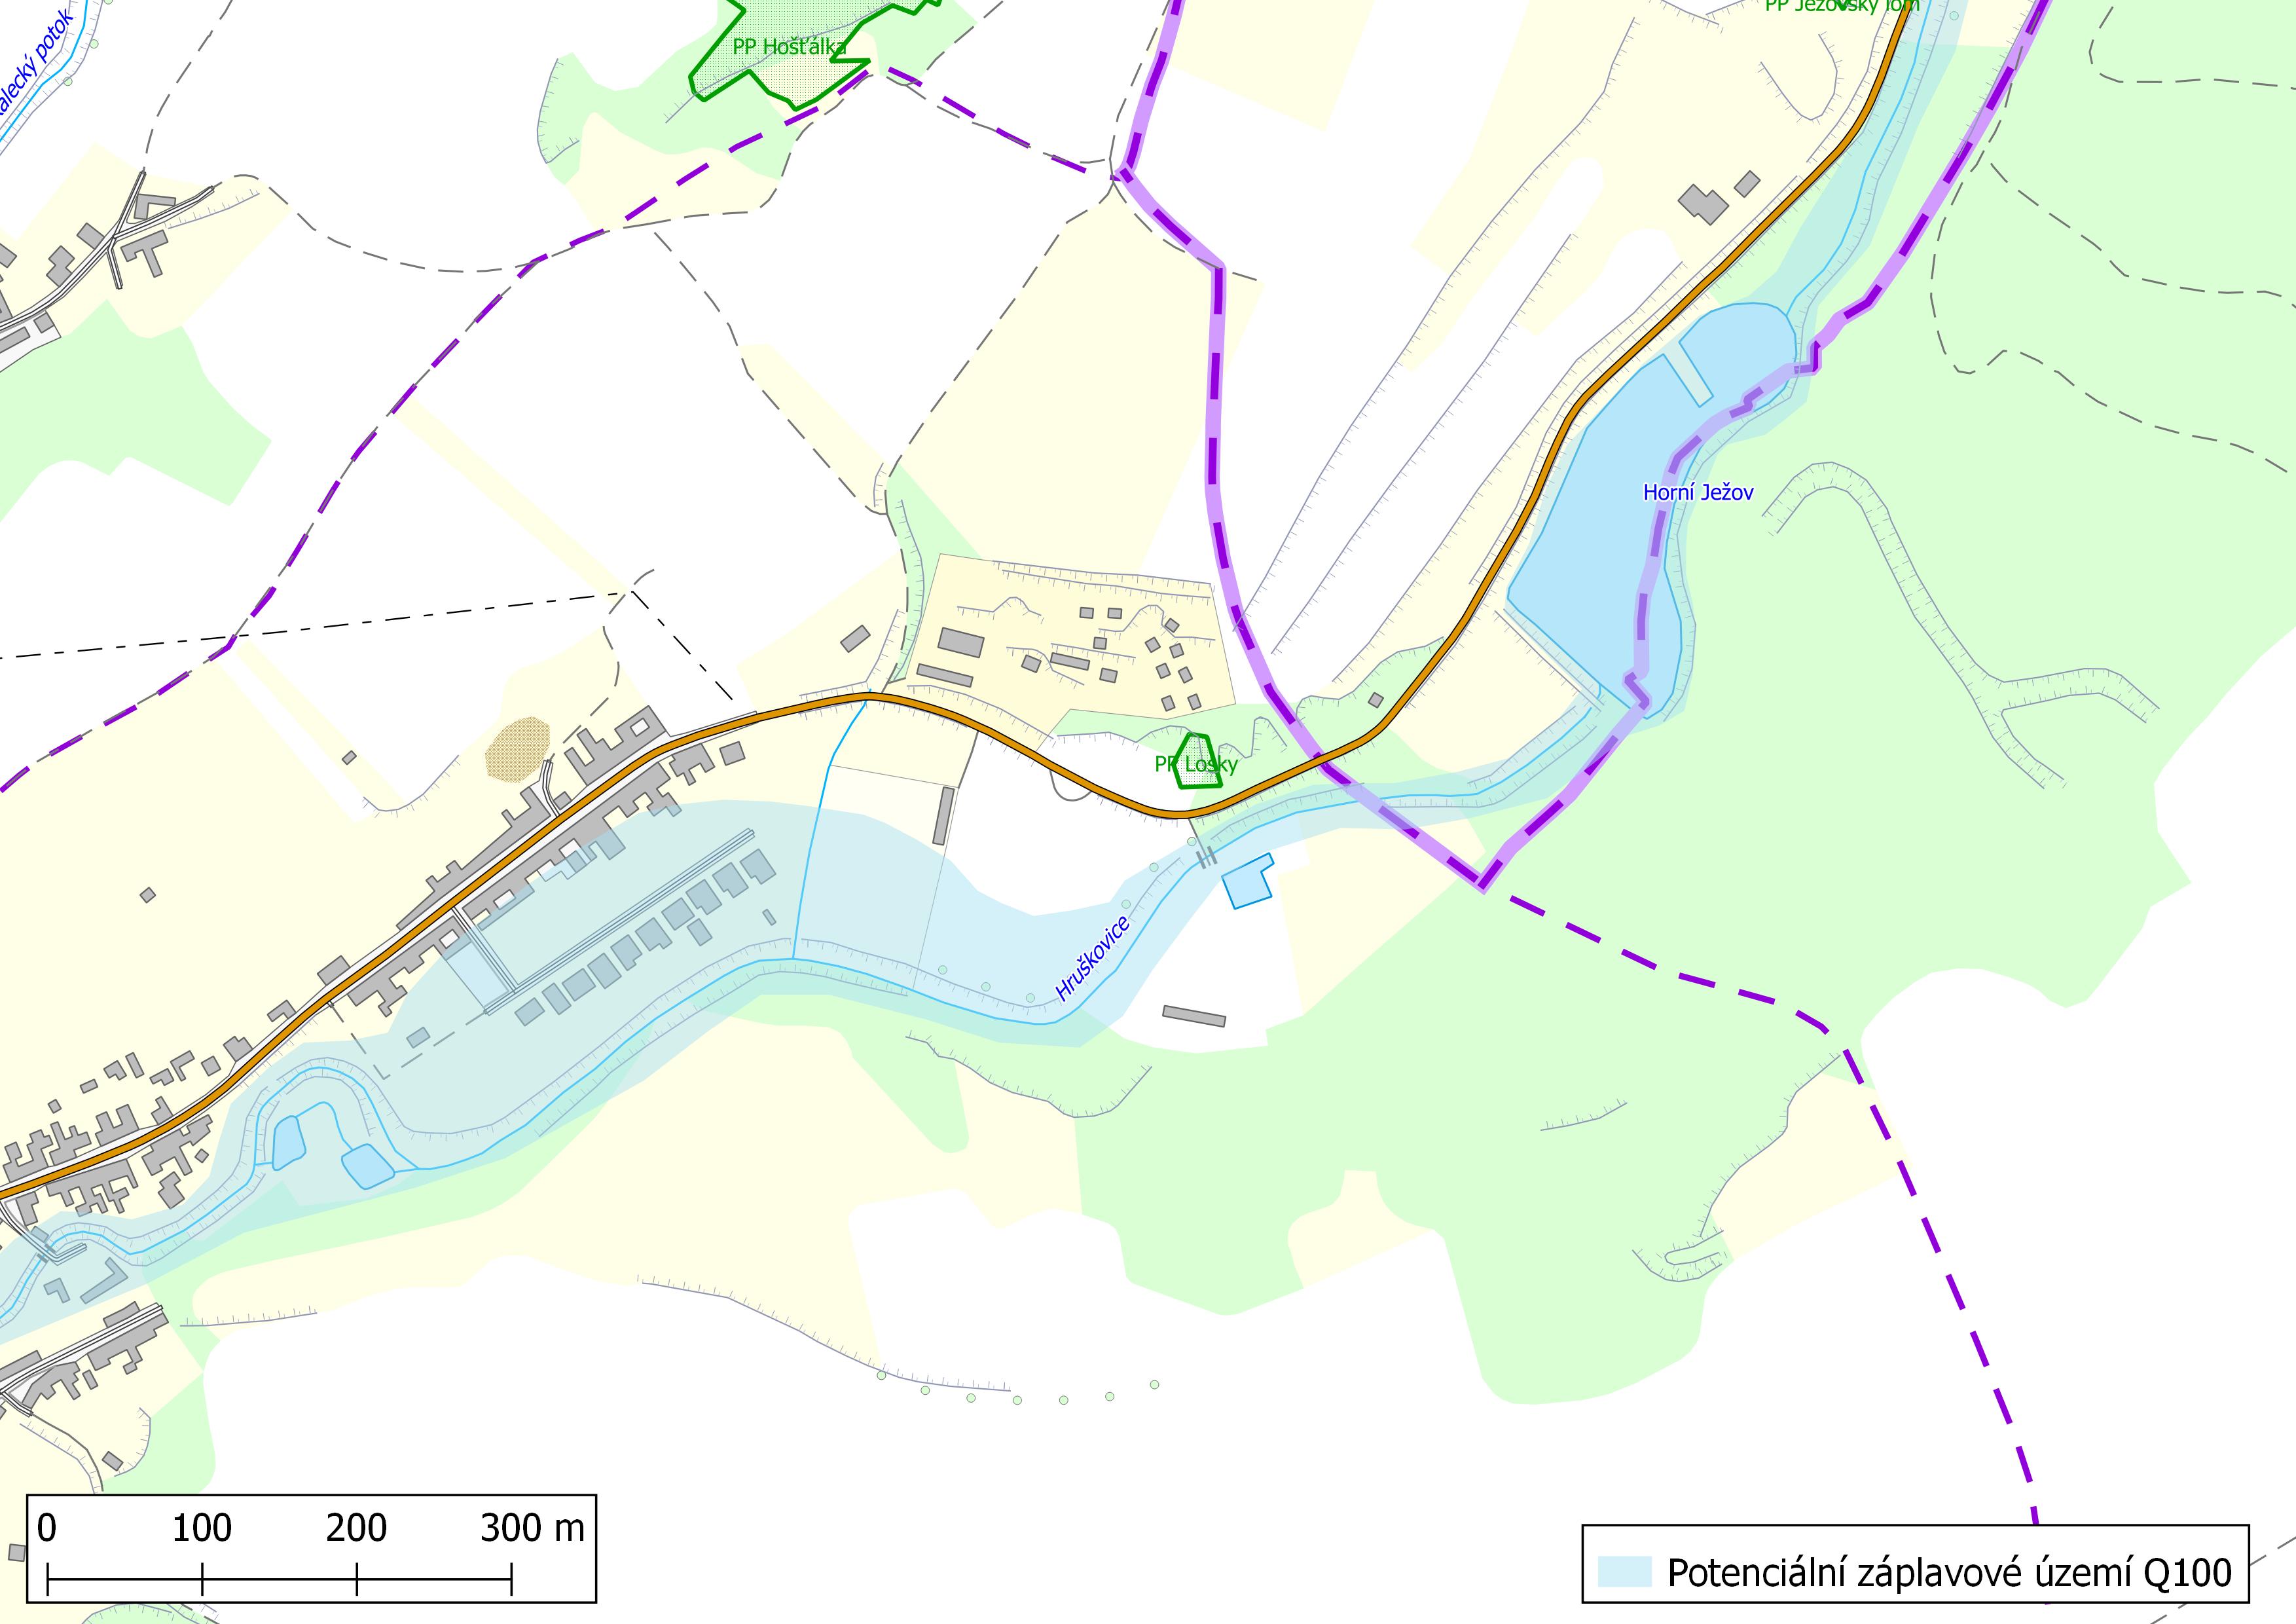 Potenciální záplavové území Q100 (severovýchod intravilánu obce Ježov)